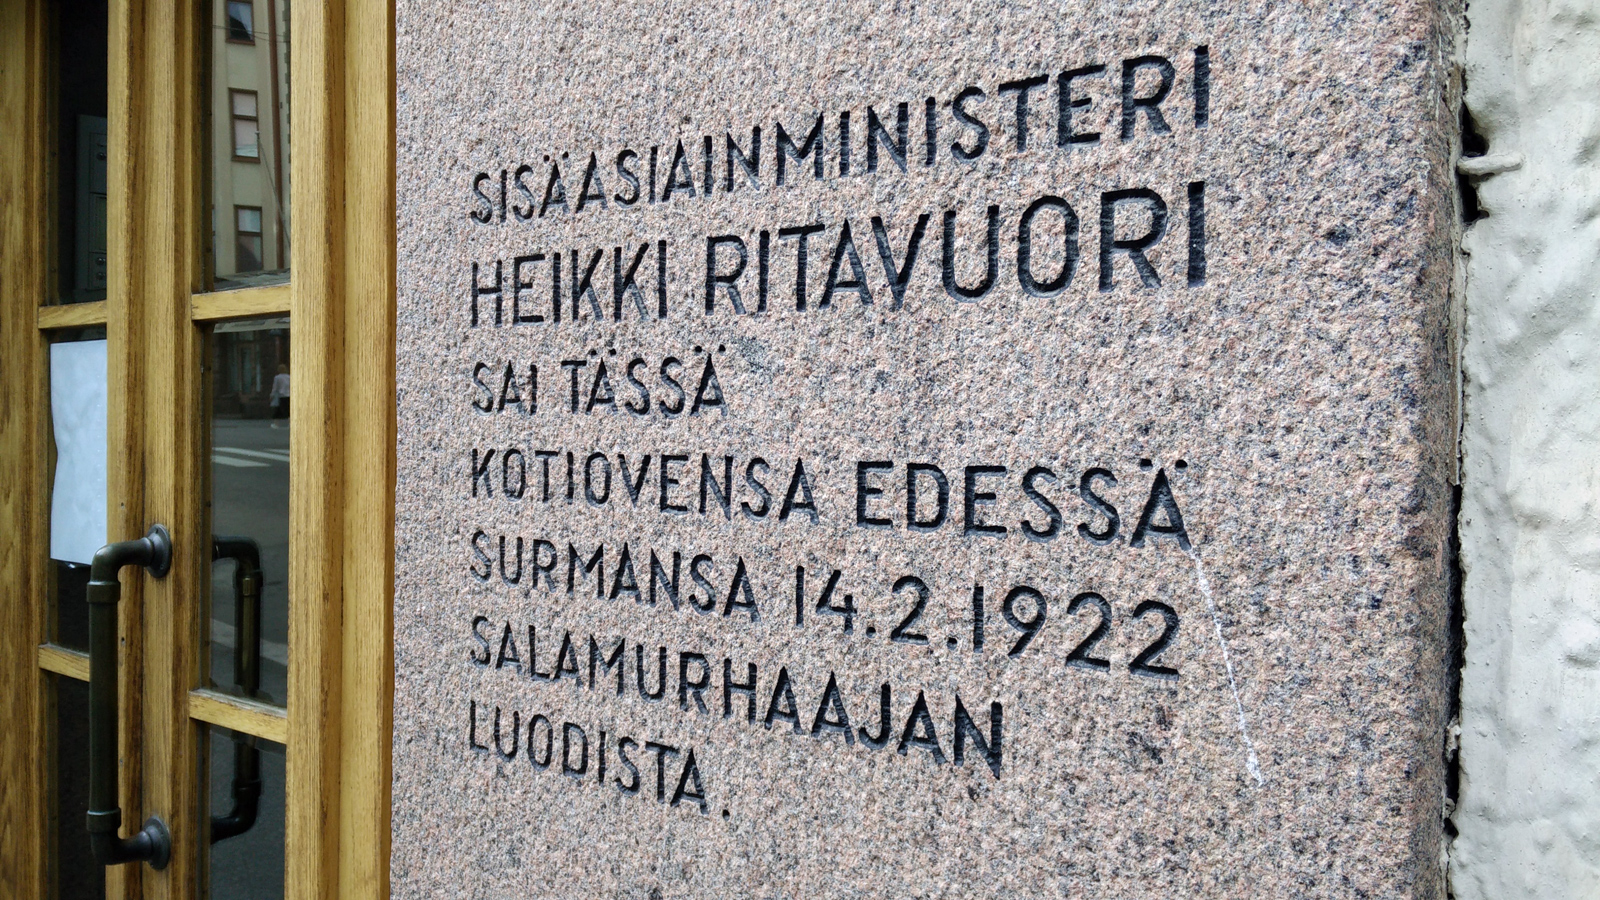 8. joulukuuta 2002. Suomen sisäasiainministeri Heikki Ritavuoren murhapaikka